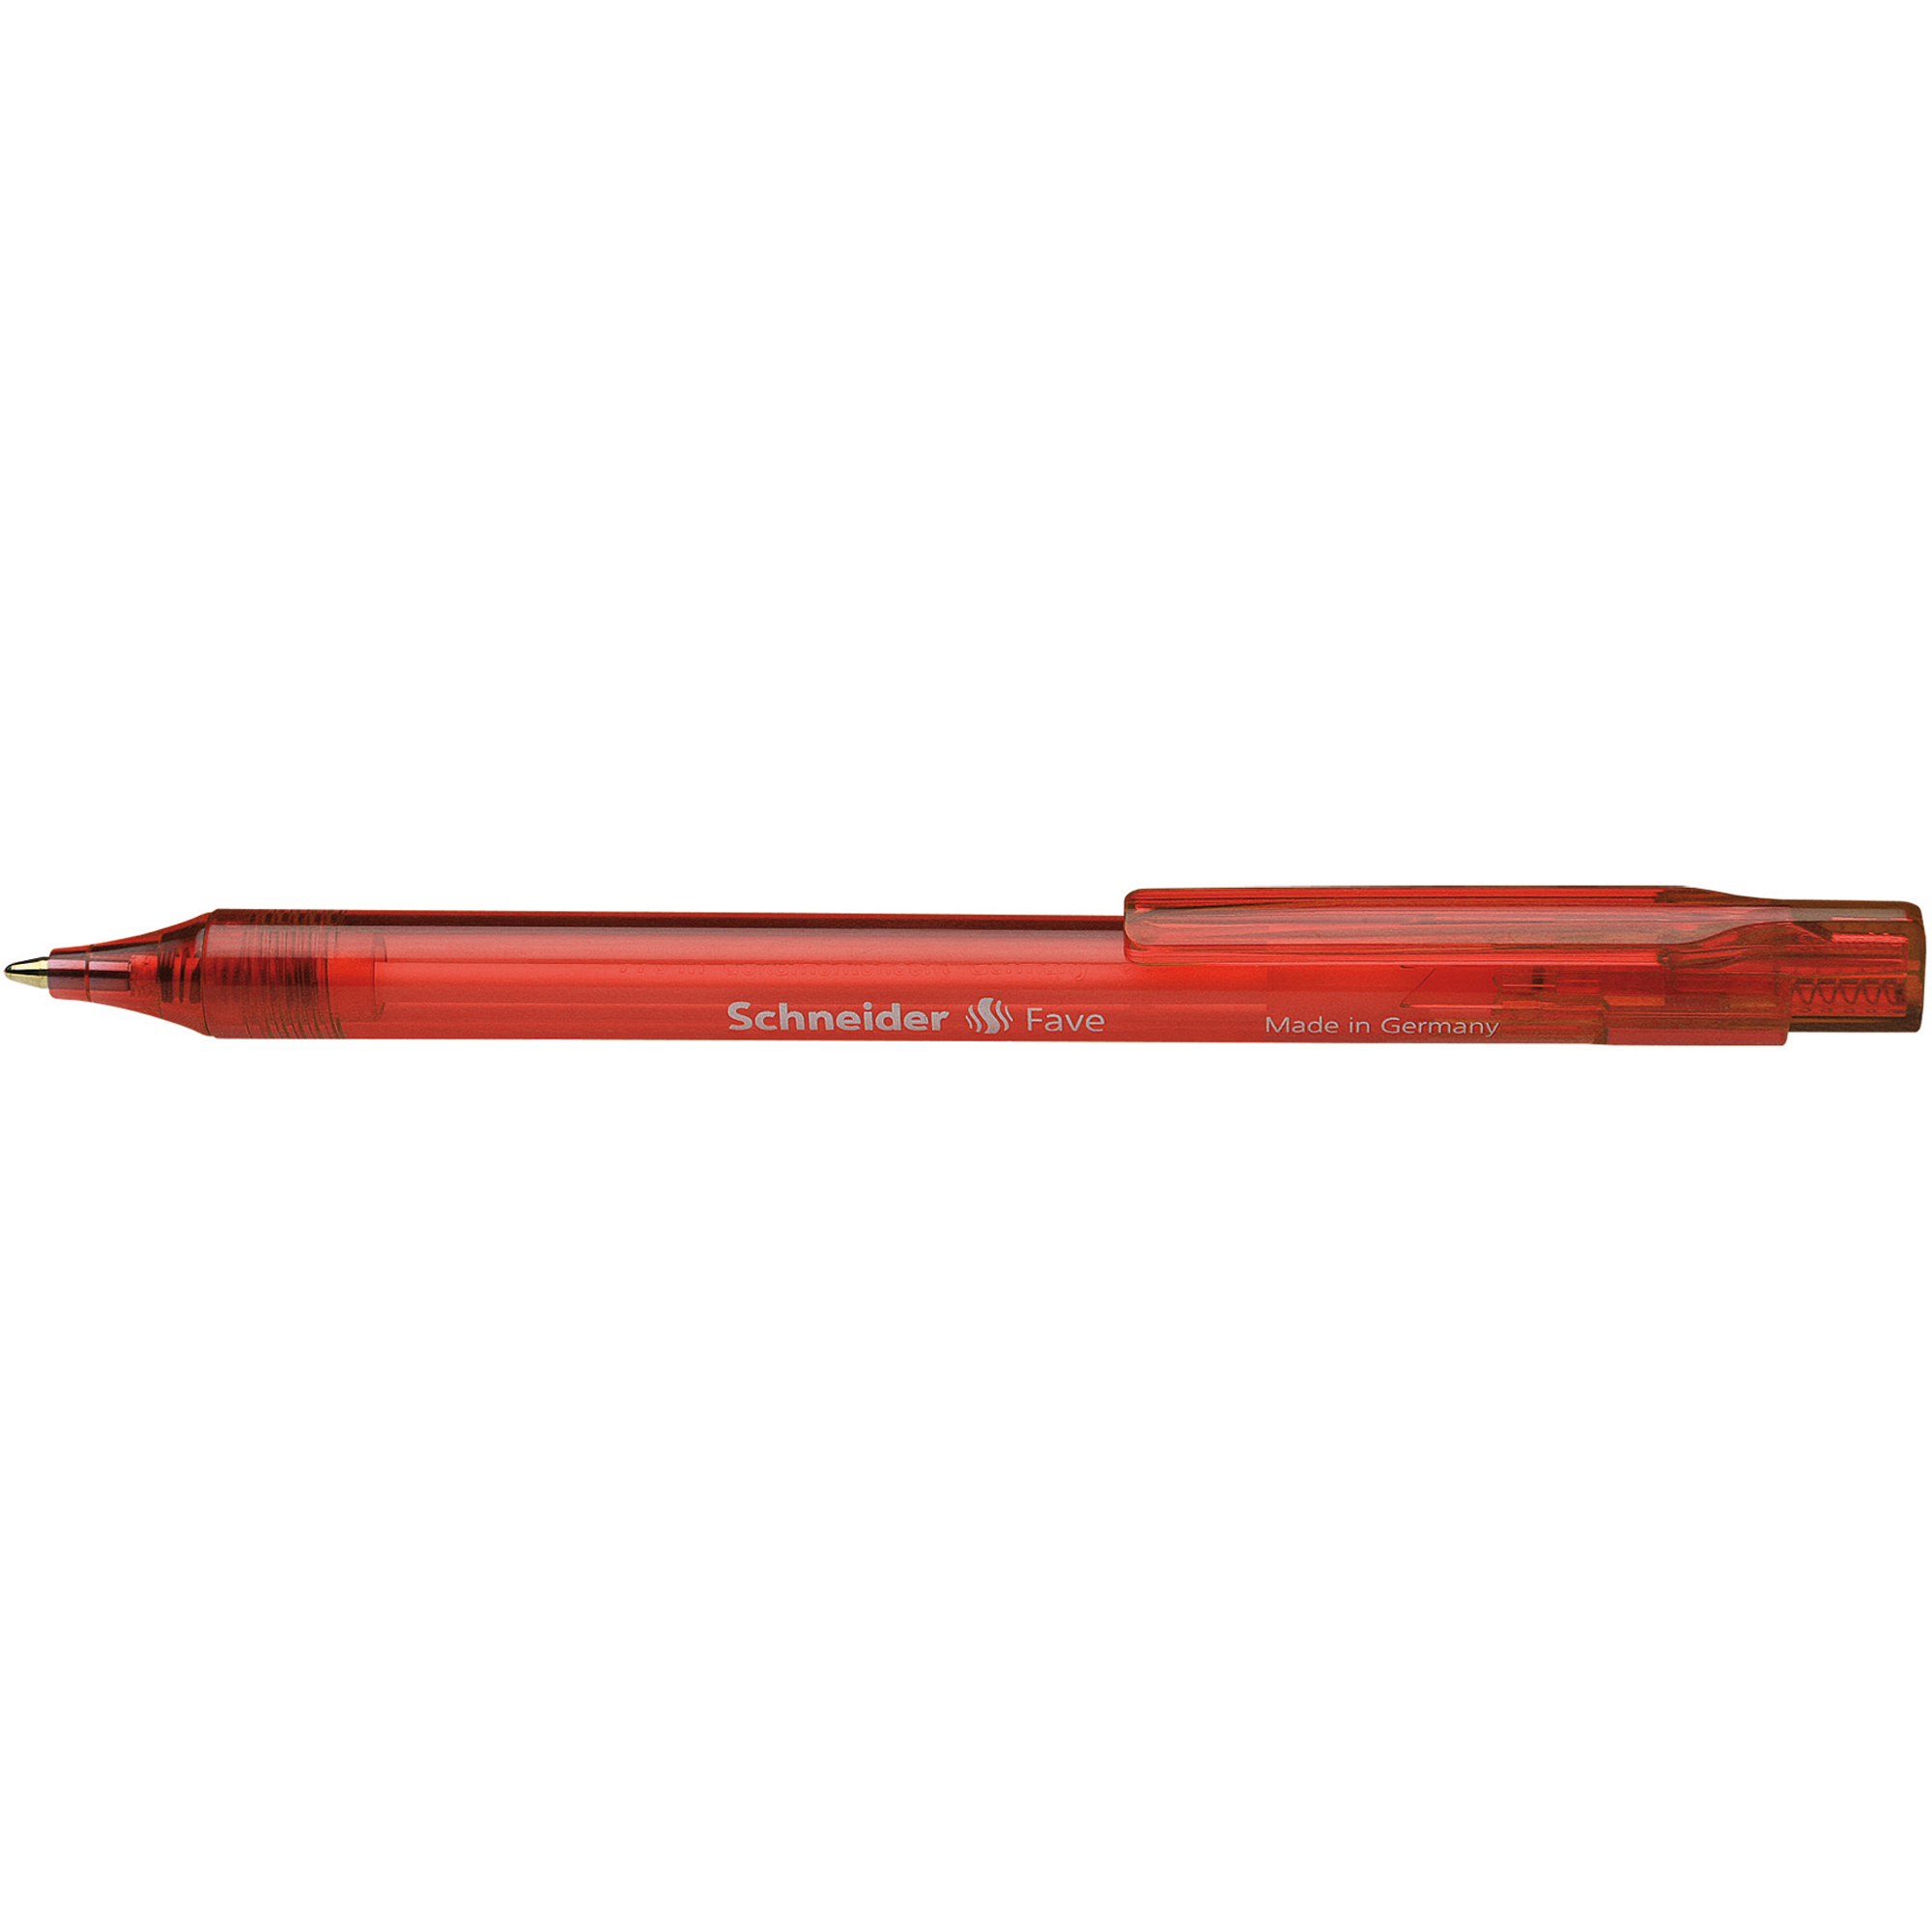 Schneider Kugelschreiber Fave schwarz rot